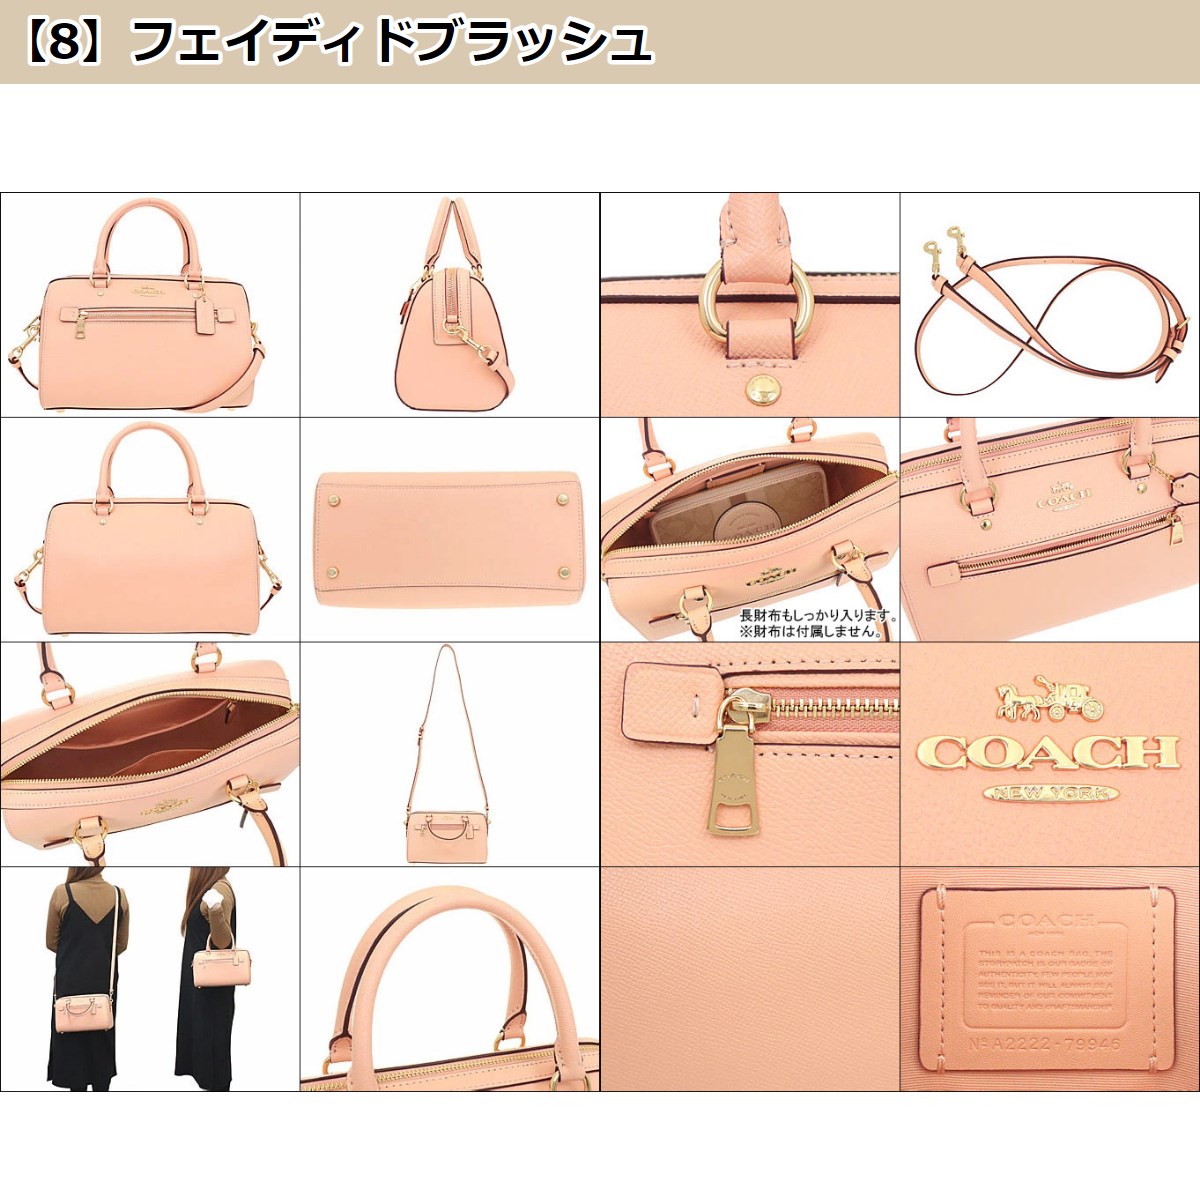 激安ファッション ★COACH 新作ハンドバッグ★新品、未使用★最安値‼️ ハンドバッグ